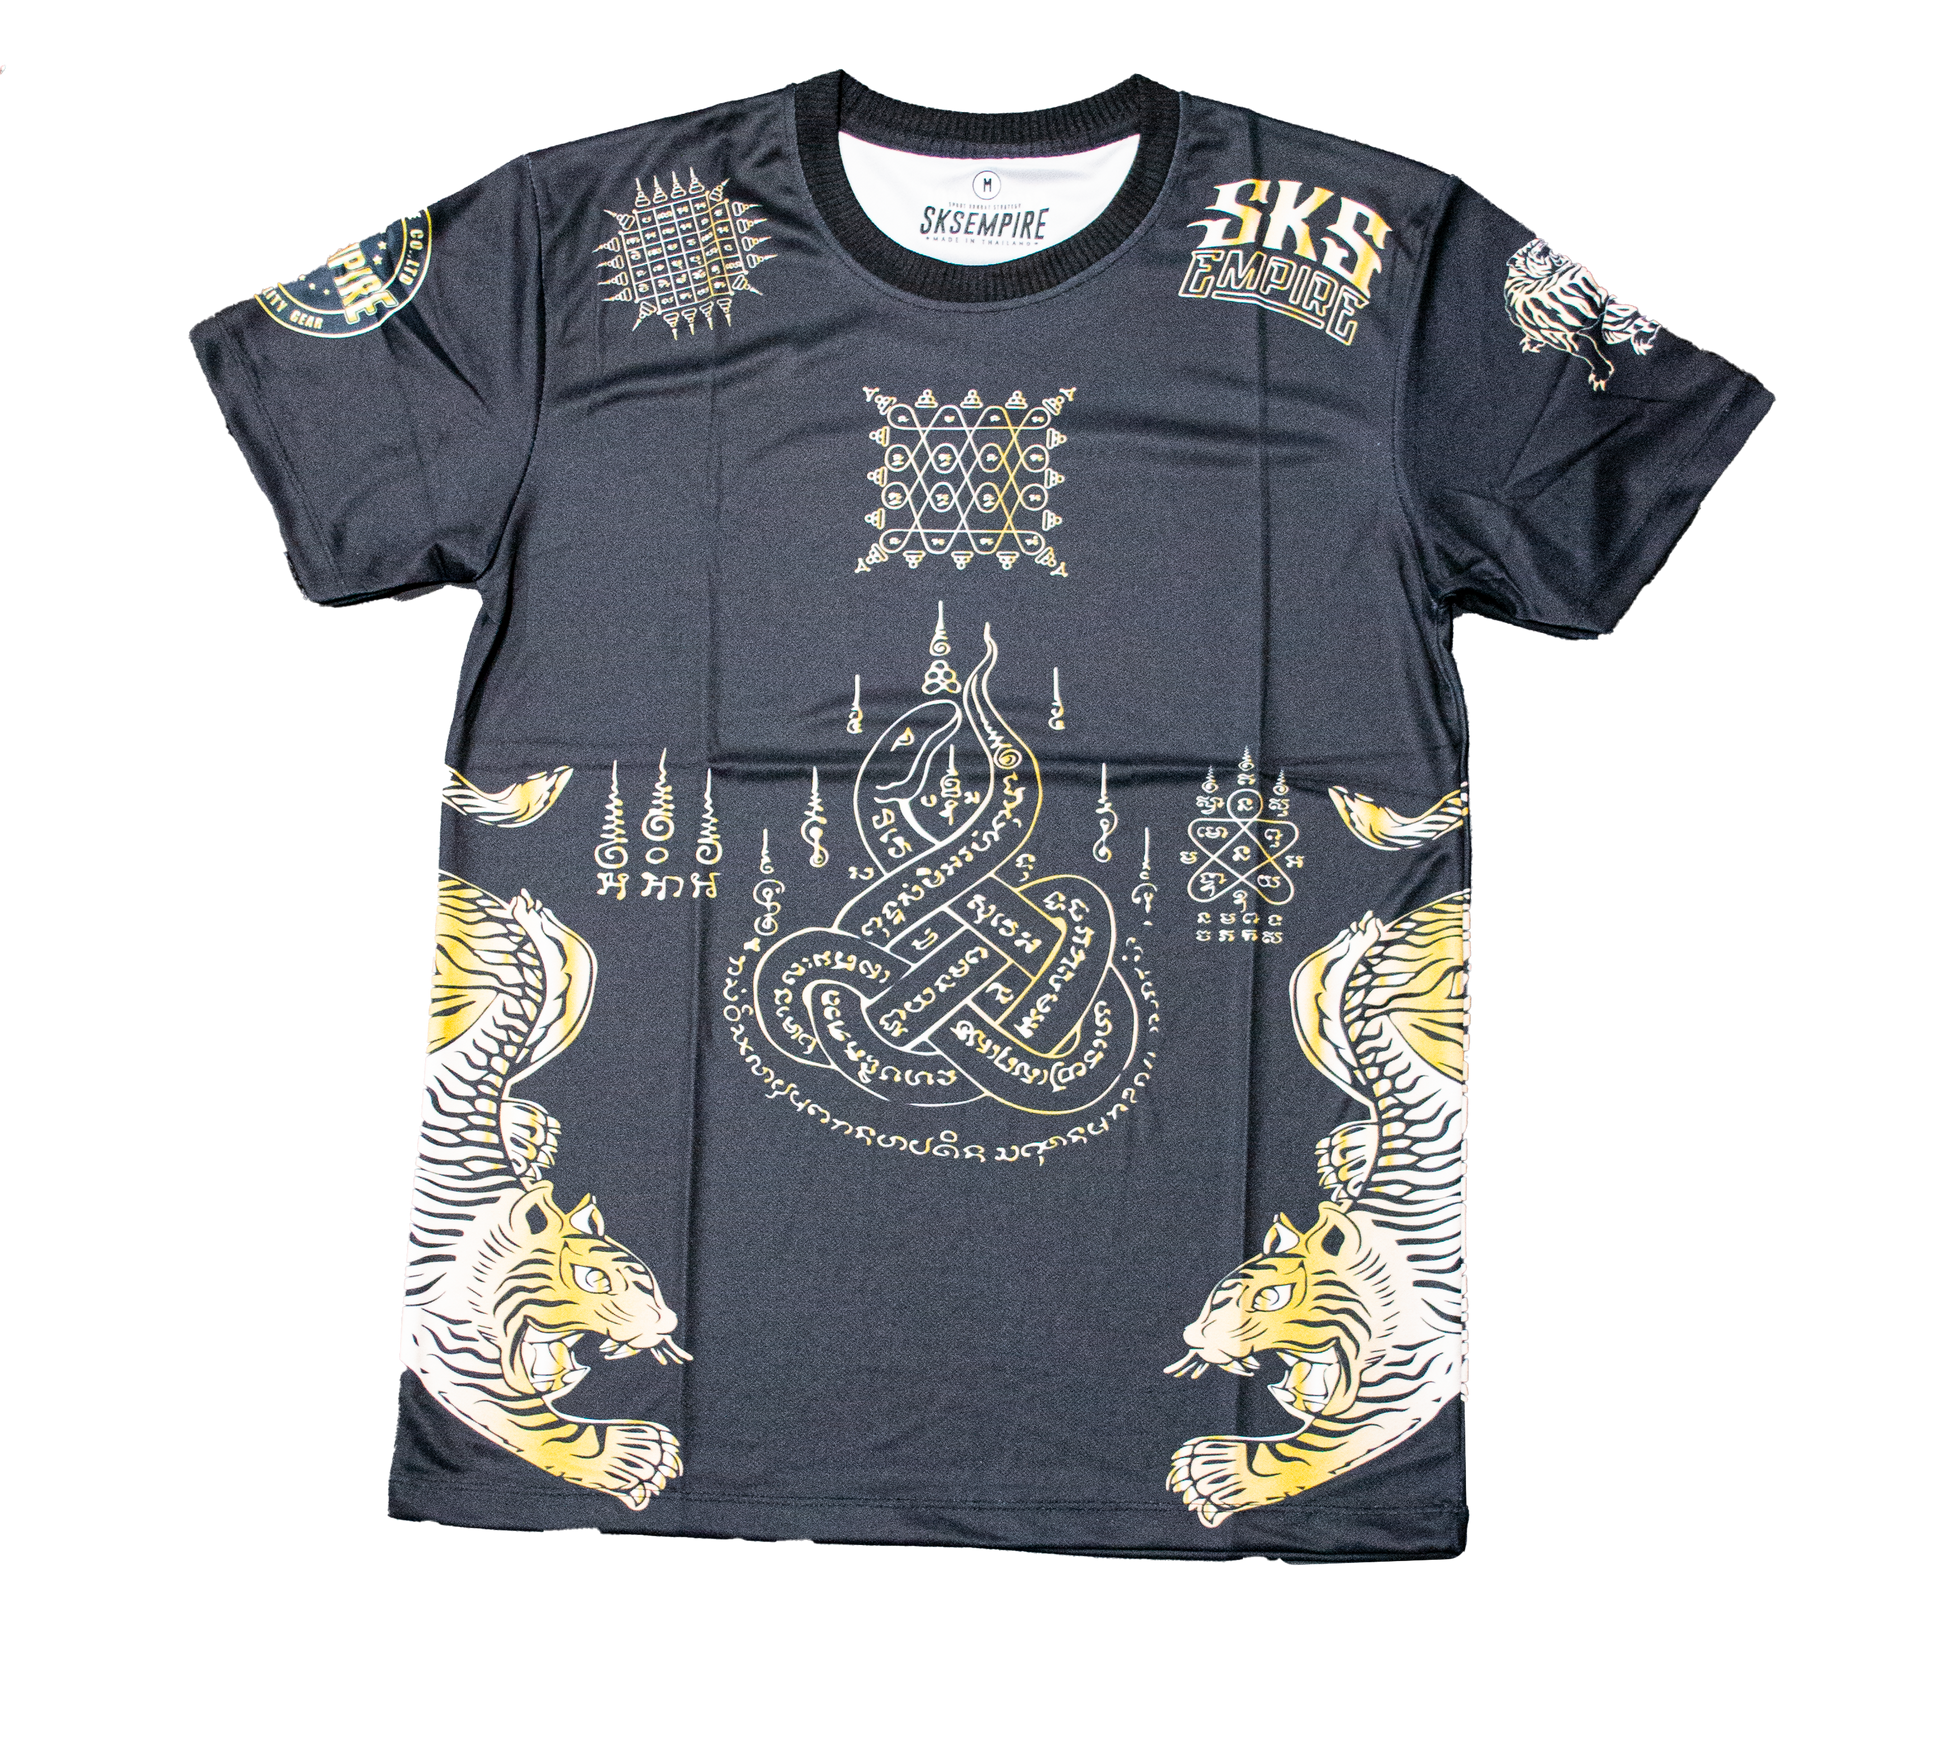 SKS Empire UK Black Sak Yant Shirt at £25